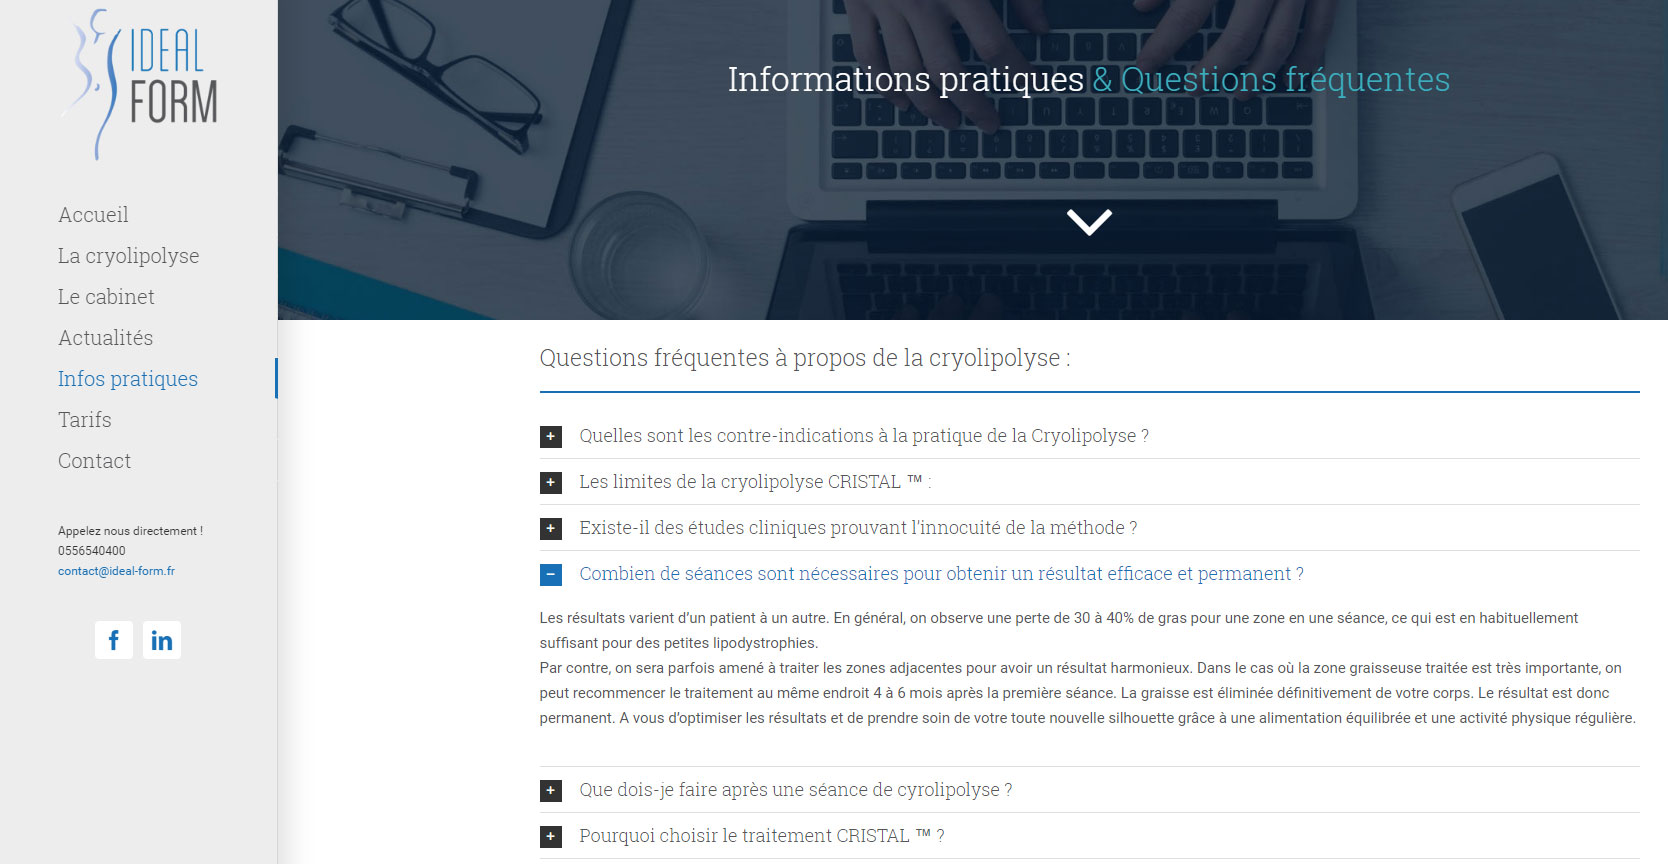 Capture d'écran de la page "Infos pratiques" du site web Ideal Form